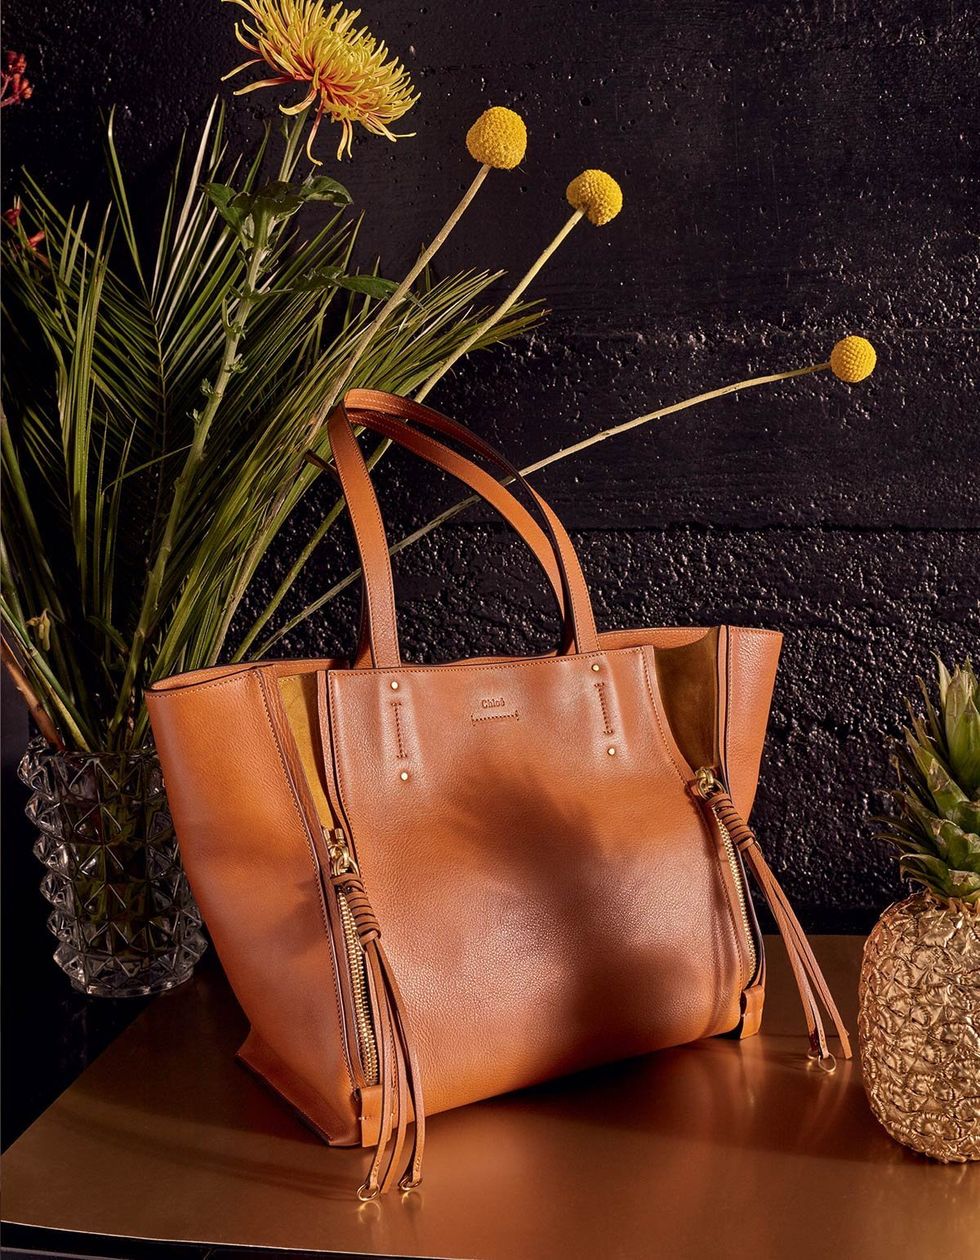 Bag, Shoulder bag, Tan, Still life photography, Leather, Flower Arranging, Floral design, Flowering plant, Houseplant, Peach, 